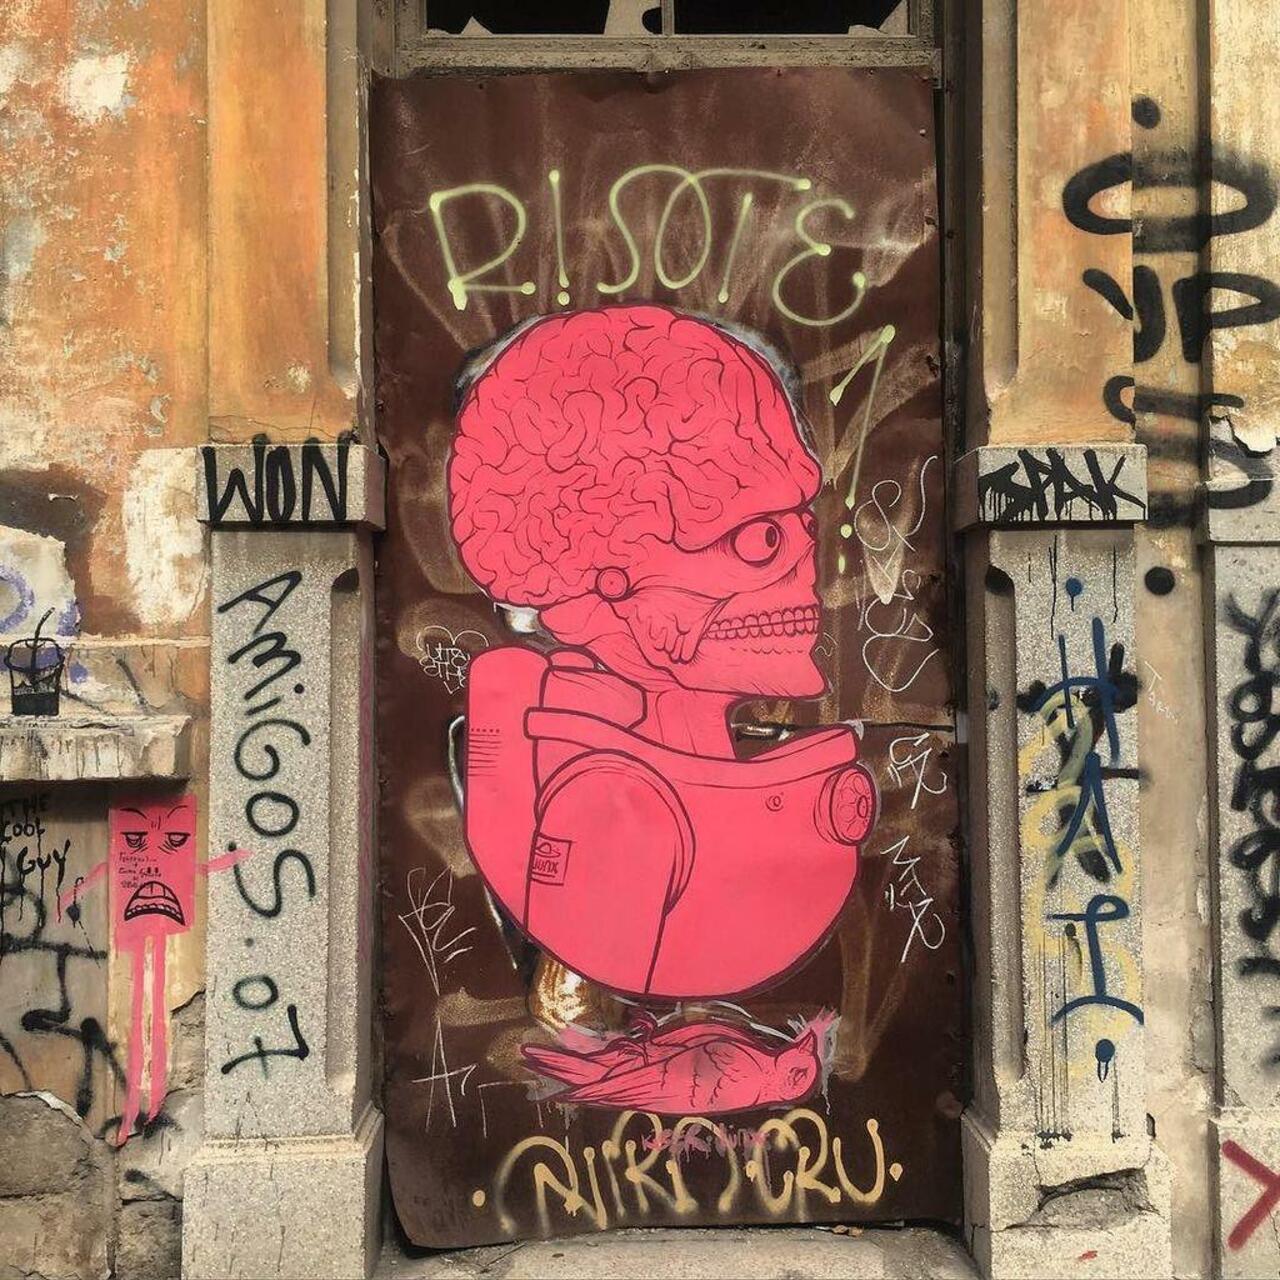 Graffiti Doors
Athens, Greece
#graff #graffiti #graffitiathens #outsider #outsiderart #street #streetart #streetart… http://t.co/J6l449WF2Z